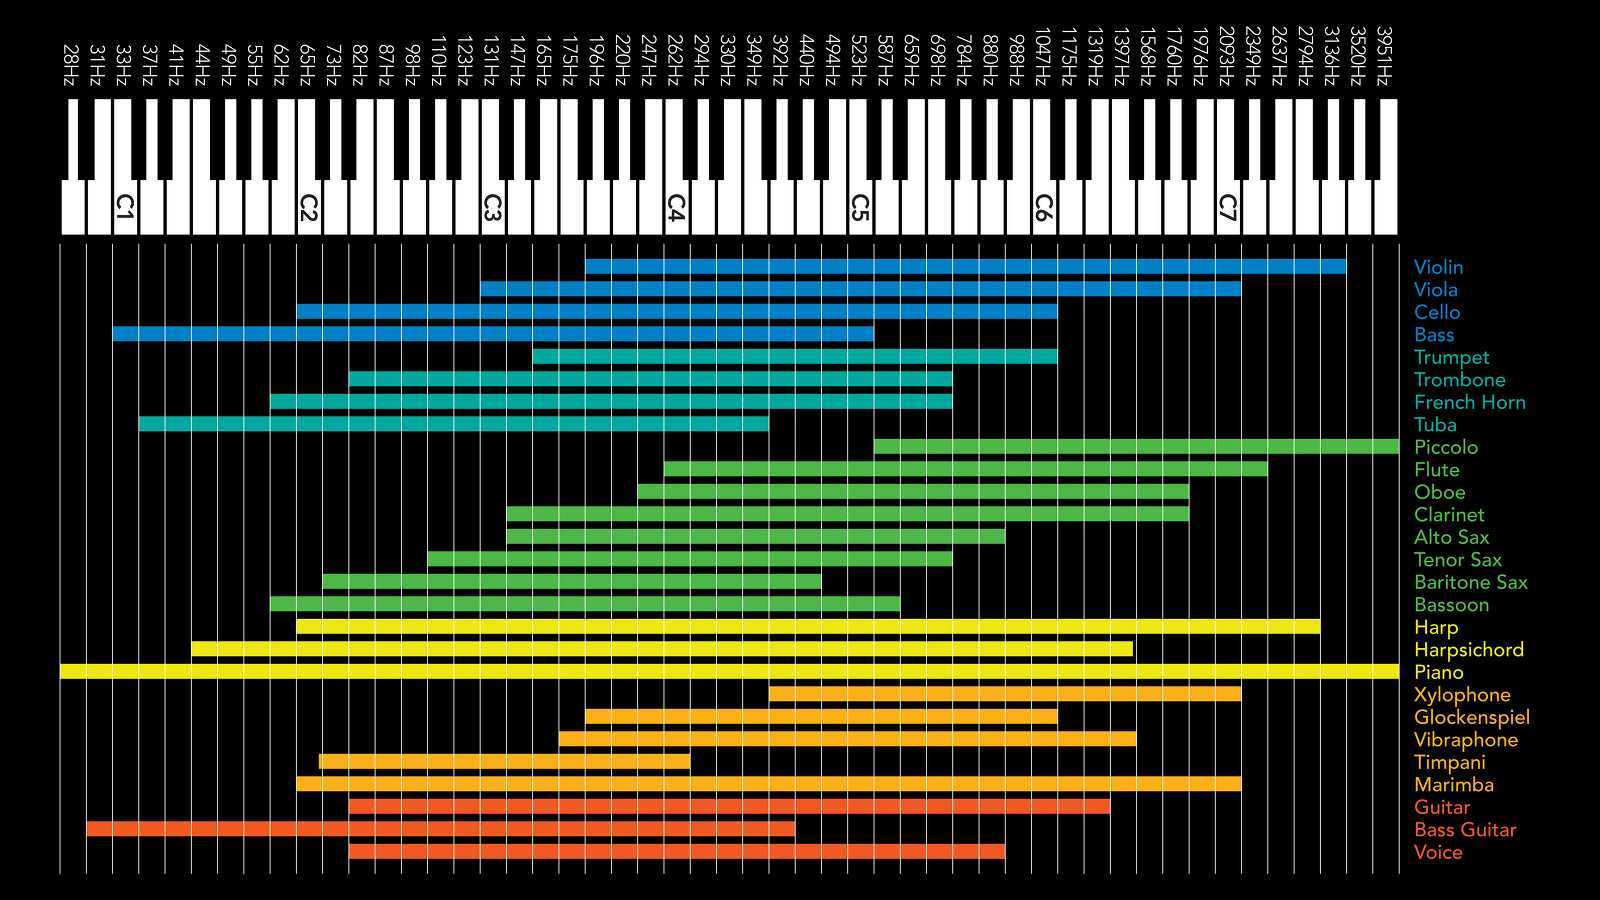 Голос какая частота. Частотный диапазон музыкальных инструментов таблица. Частотные диапазоны музыкальных инструментов. Частотный диапазон бас гитары. Таблица эквалайзера частоты вокала.